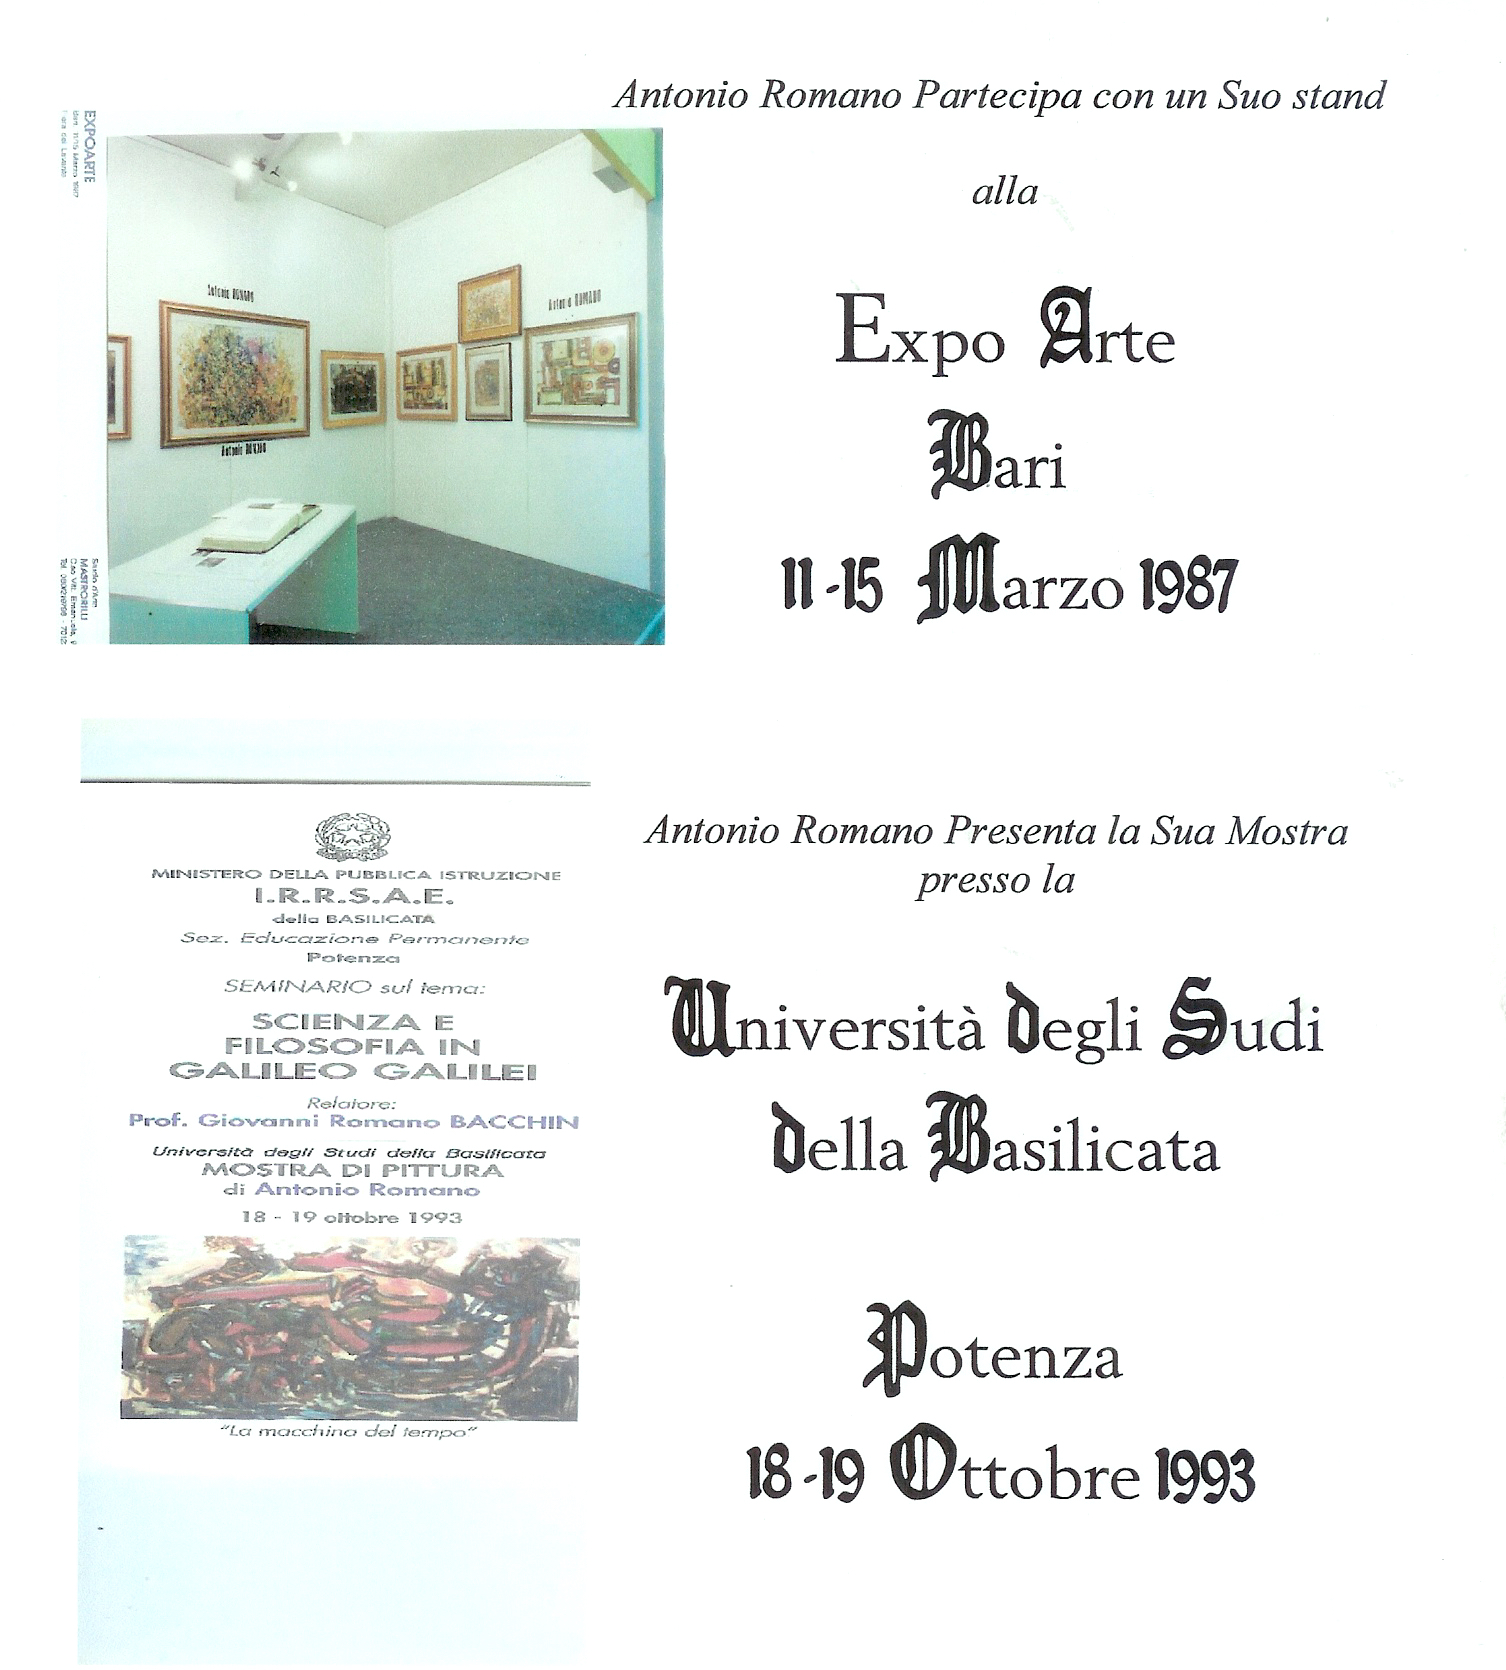 Mostra all'Expo Arte di Bari e Università degli Studi della Basilicata di Potenza